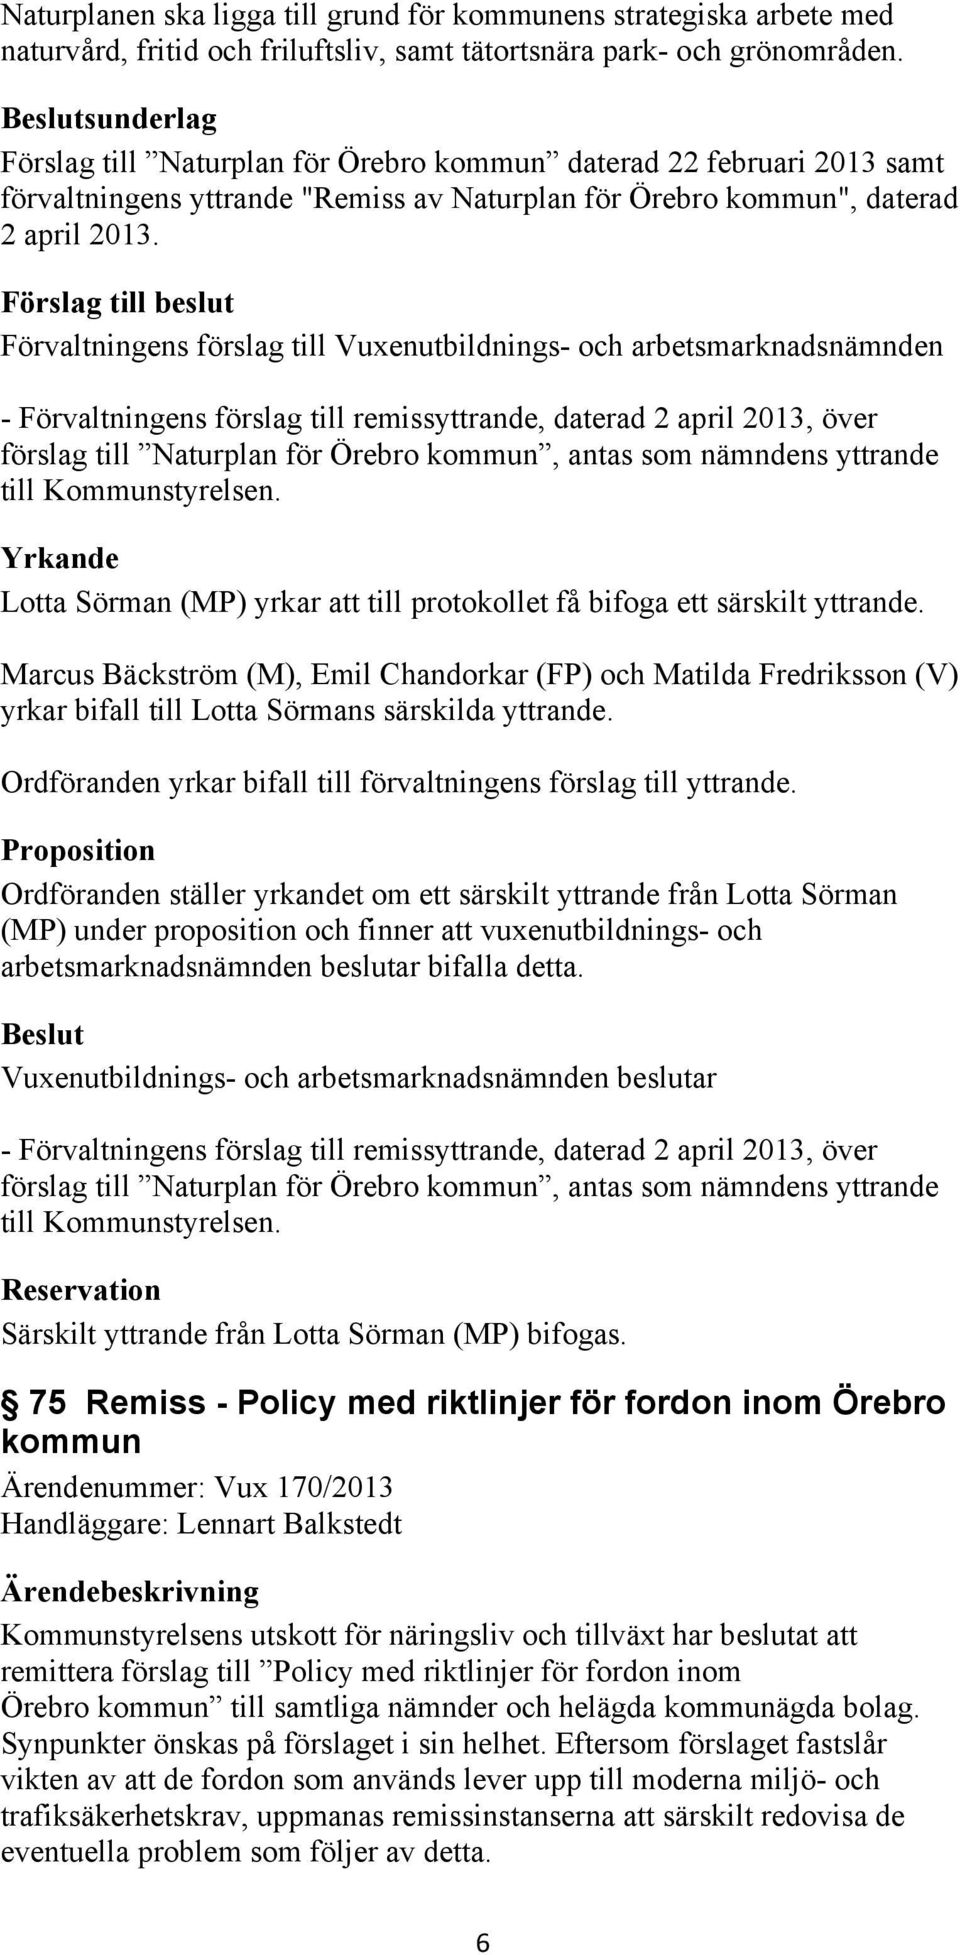 - Förvaltningens förslag till remissyttrande, daterad 2 april 2013, över förslag till Naturplan för Örebro kommun, antas som nämndens yttrande till Kommunstyrelsen.